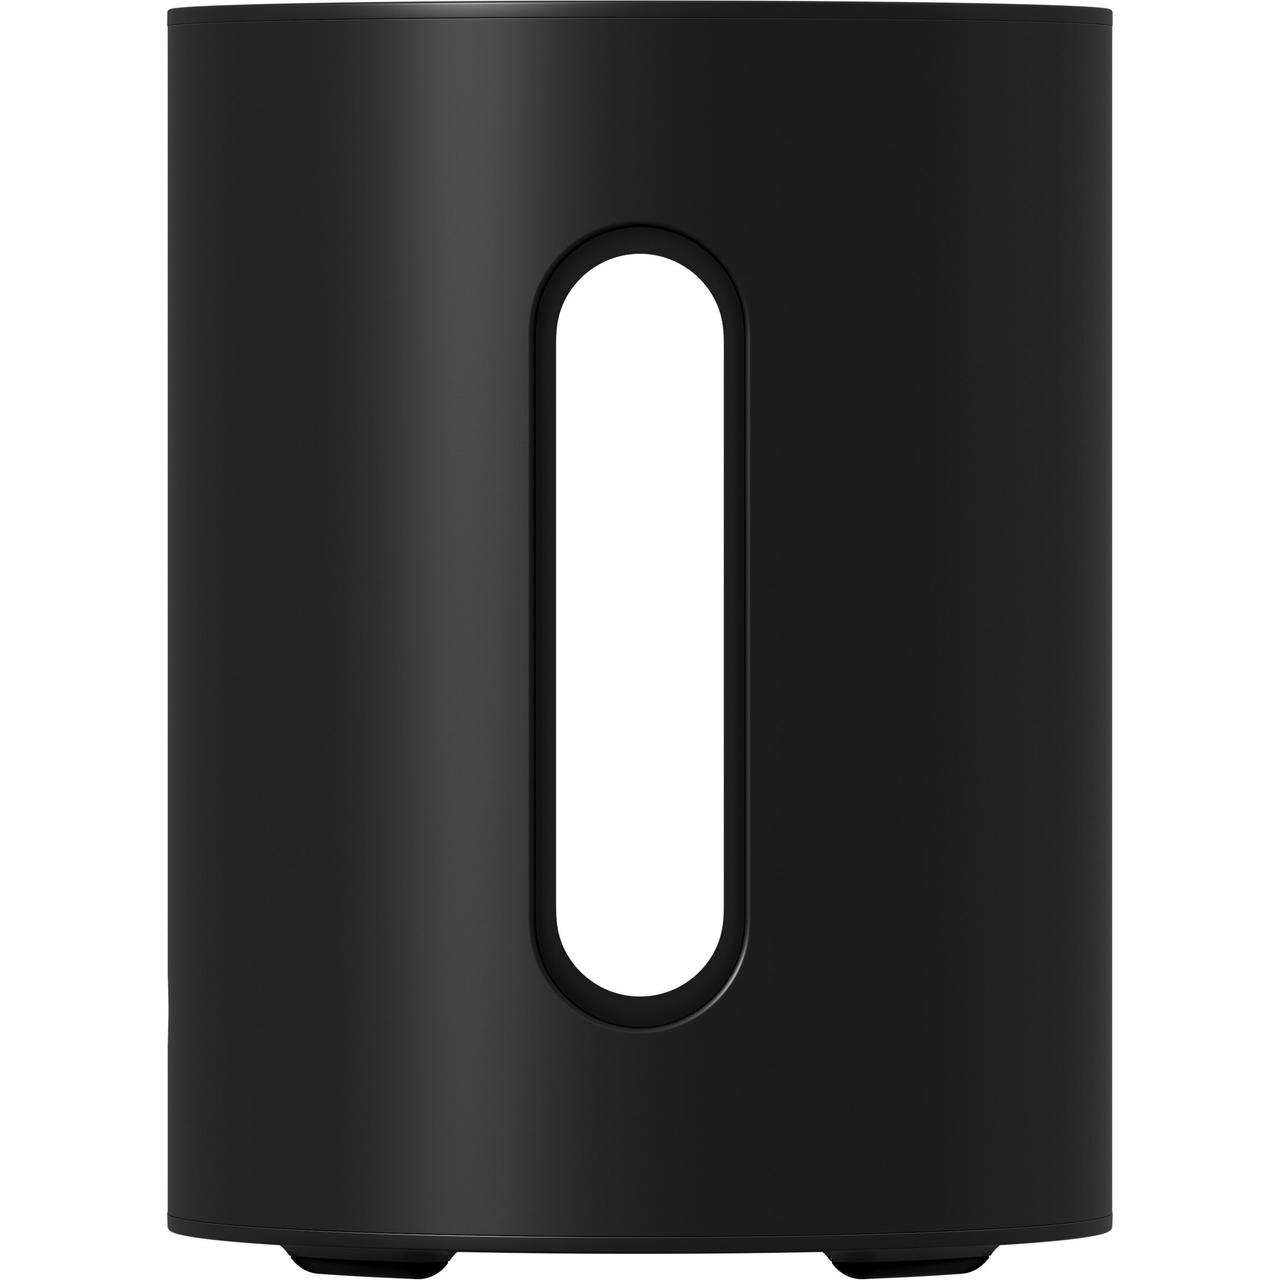 Sonos Сабвуфер Sub Mini Black (SUBM1EU1BLK)